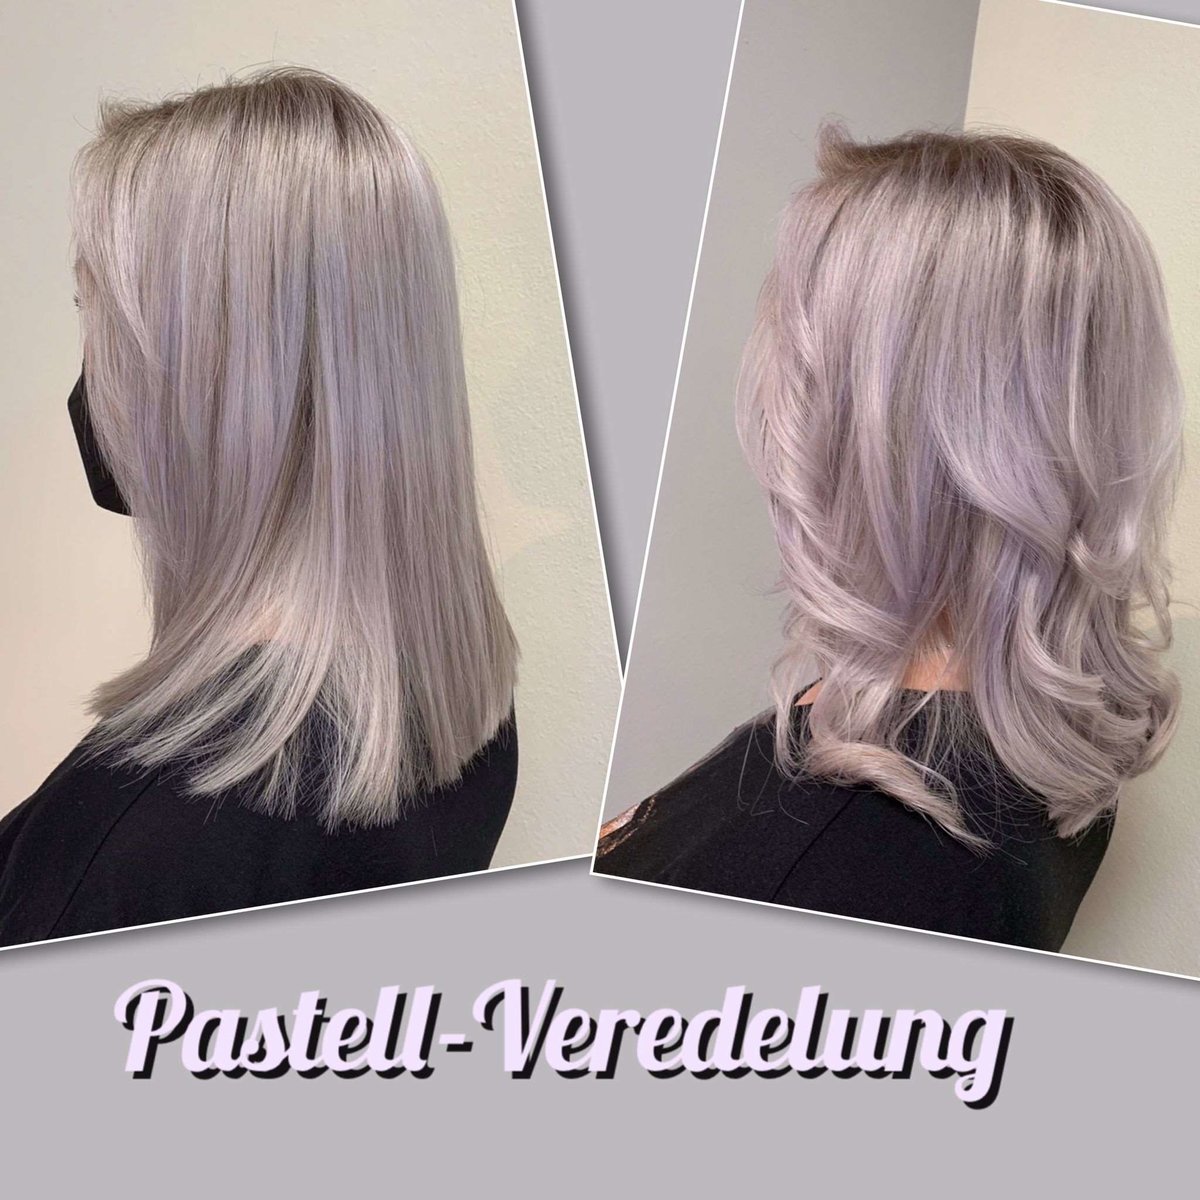 Pastell-Veredelung von Hairstyling Carola